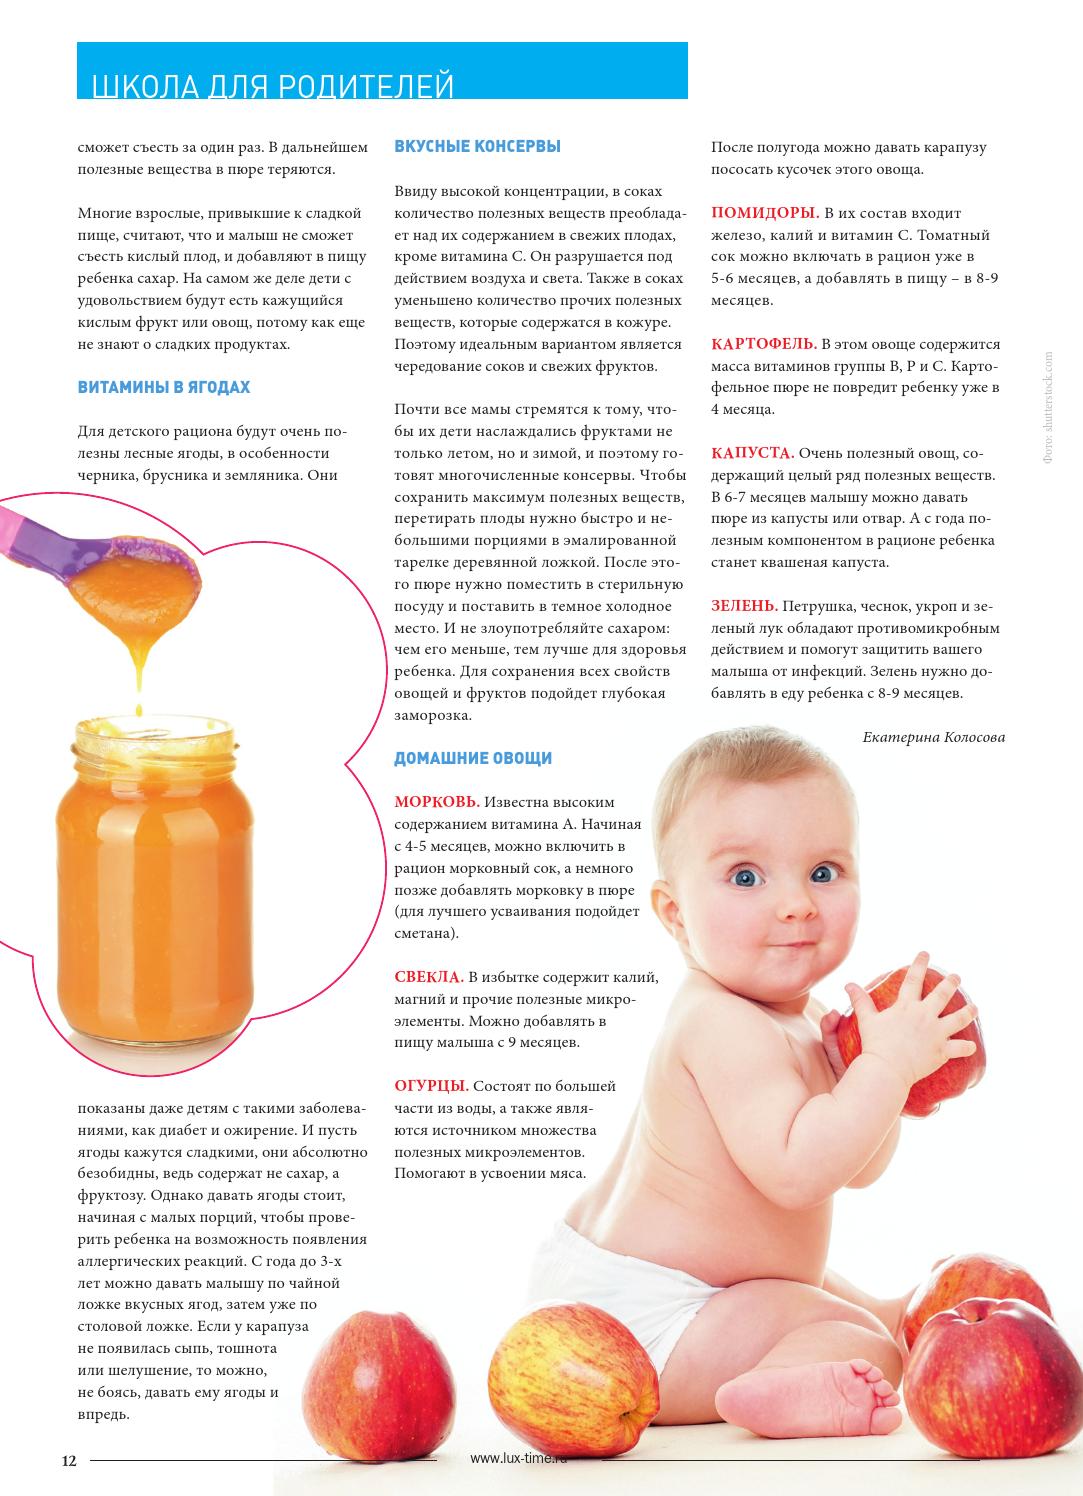 Морковный сок для детей: чем он полезен и с какого возраста можно давать?